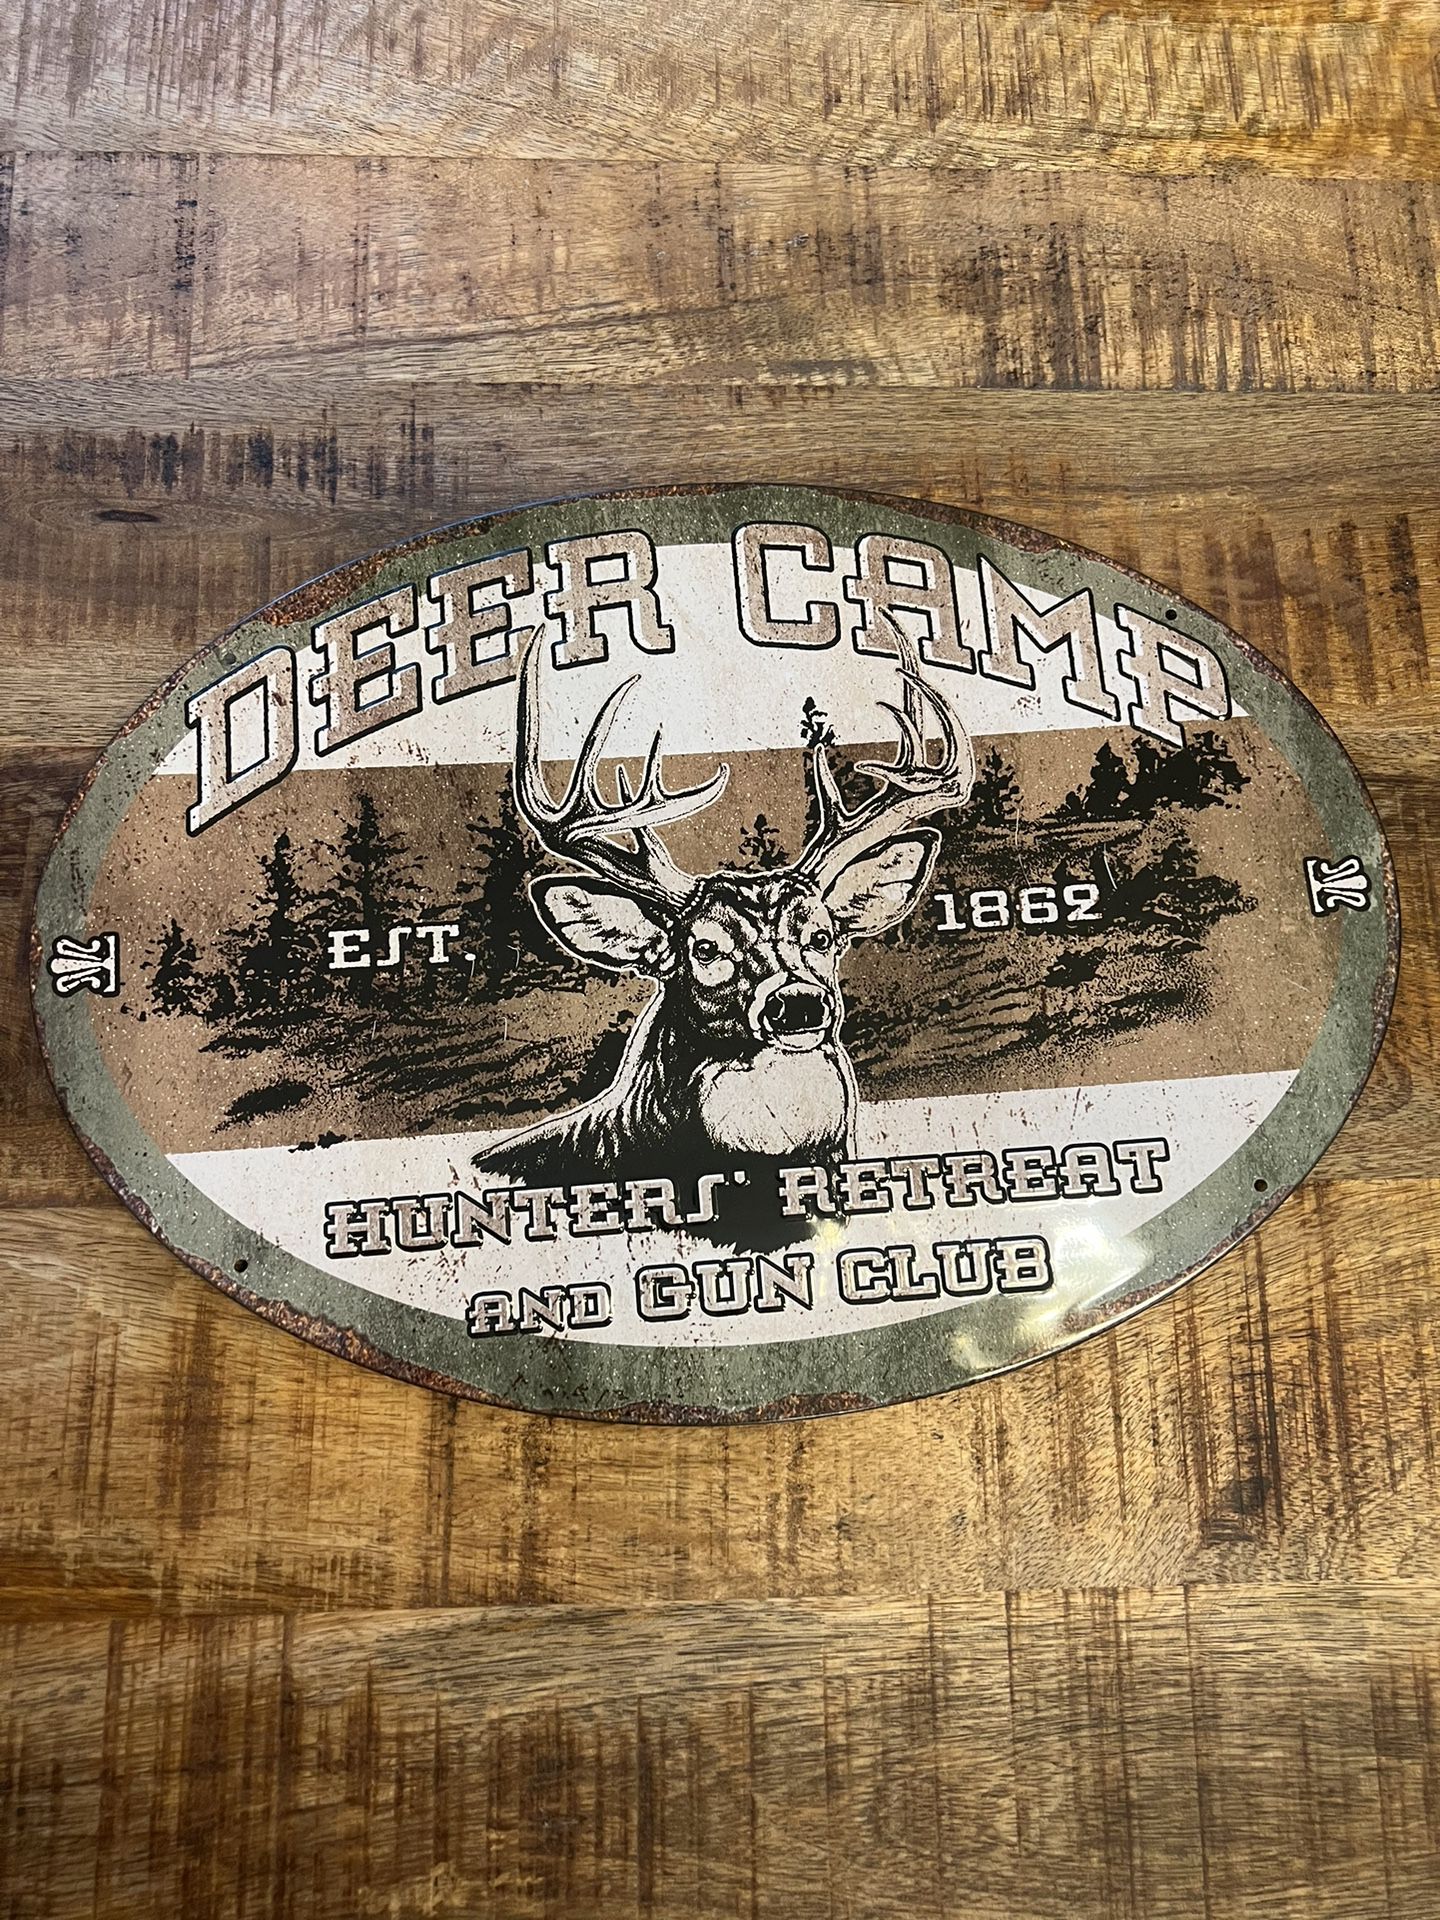 Deer Camp Tin Sign